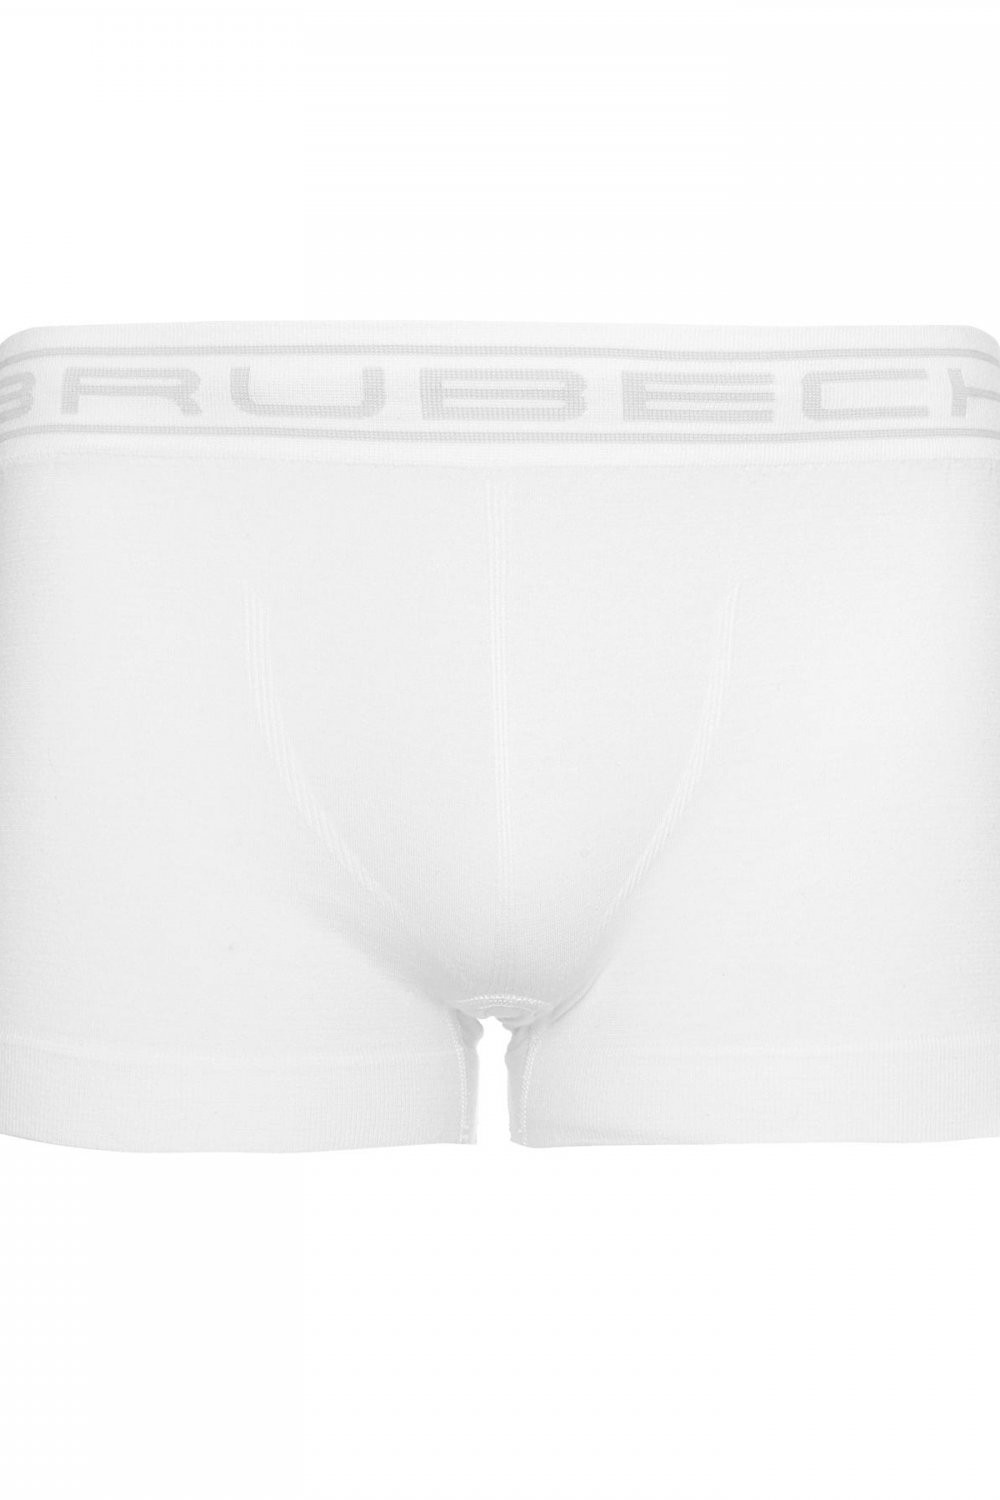 Pánské boxerky model 16247163 white - Brubeck Barva: Bílá, Velikost: M